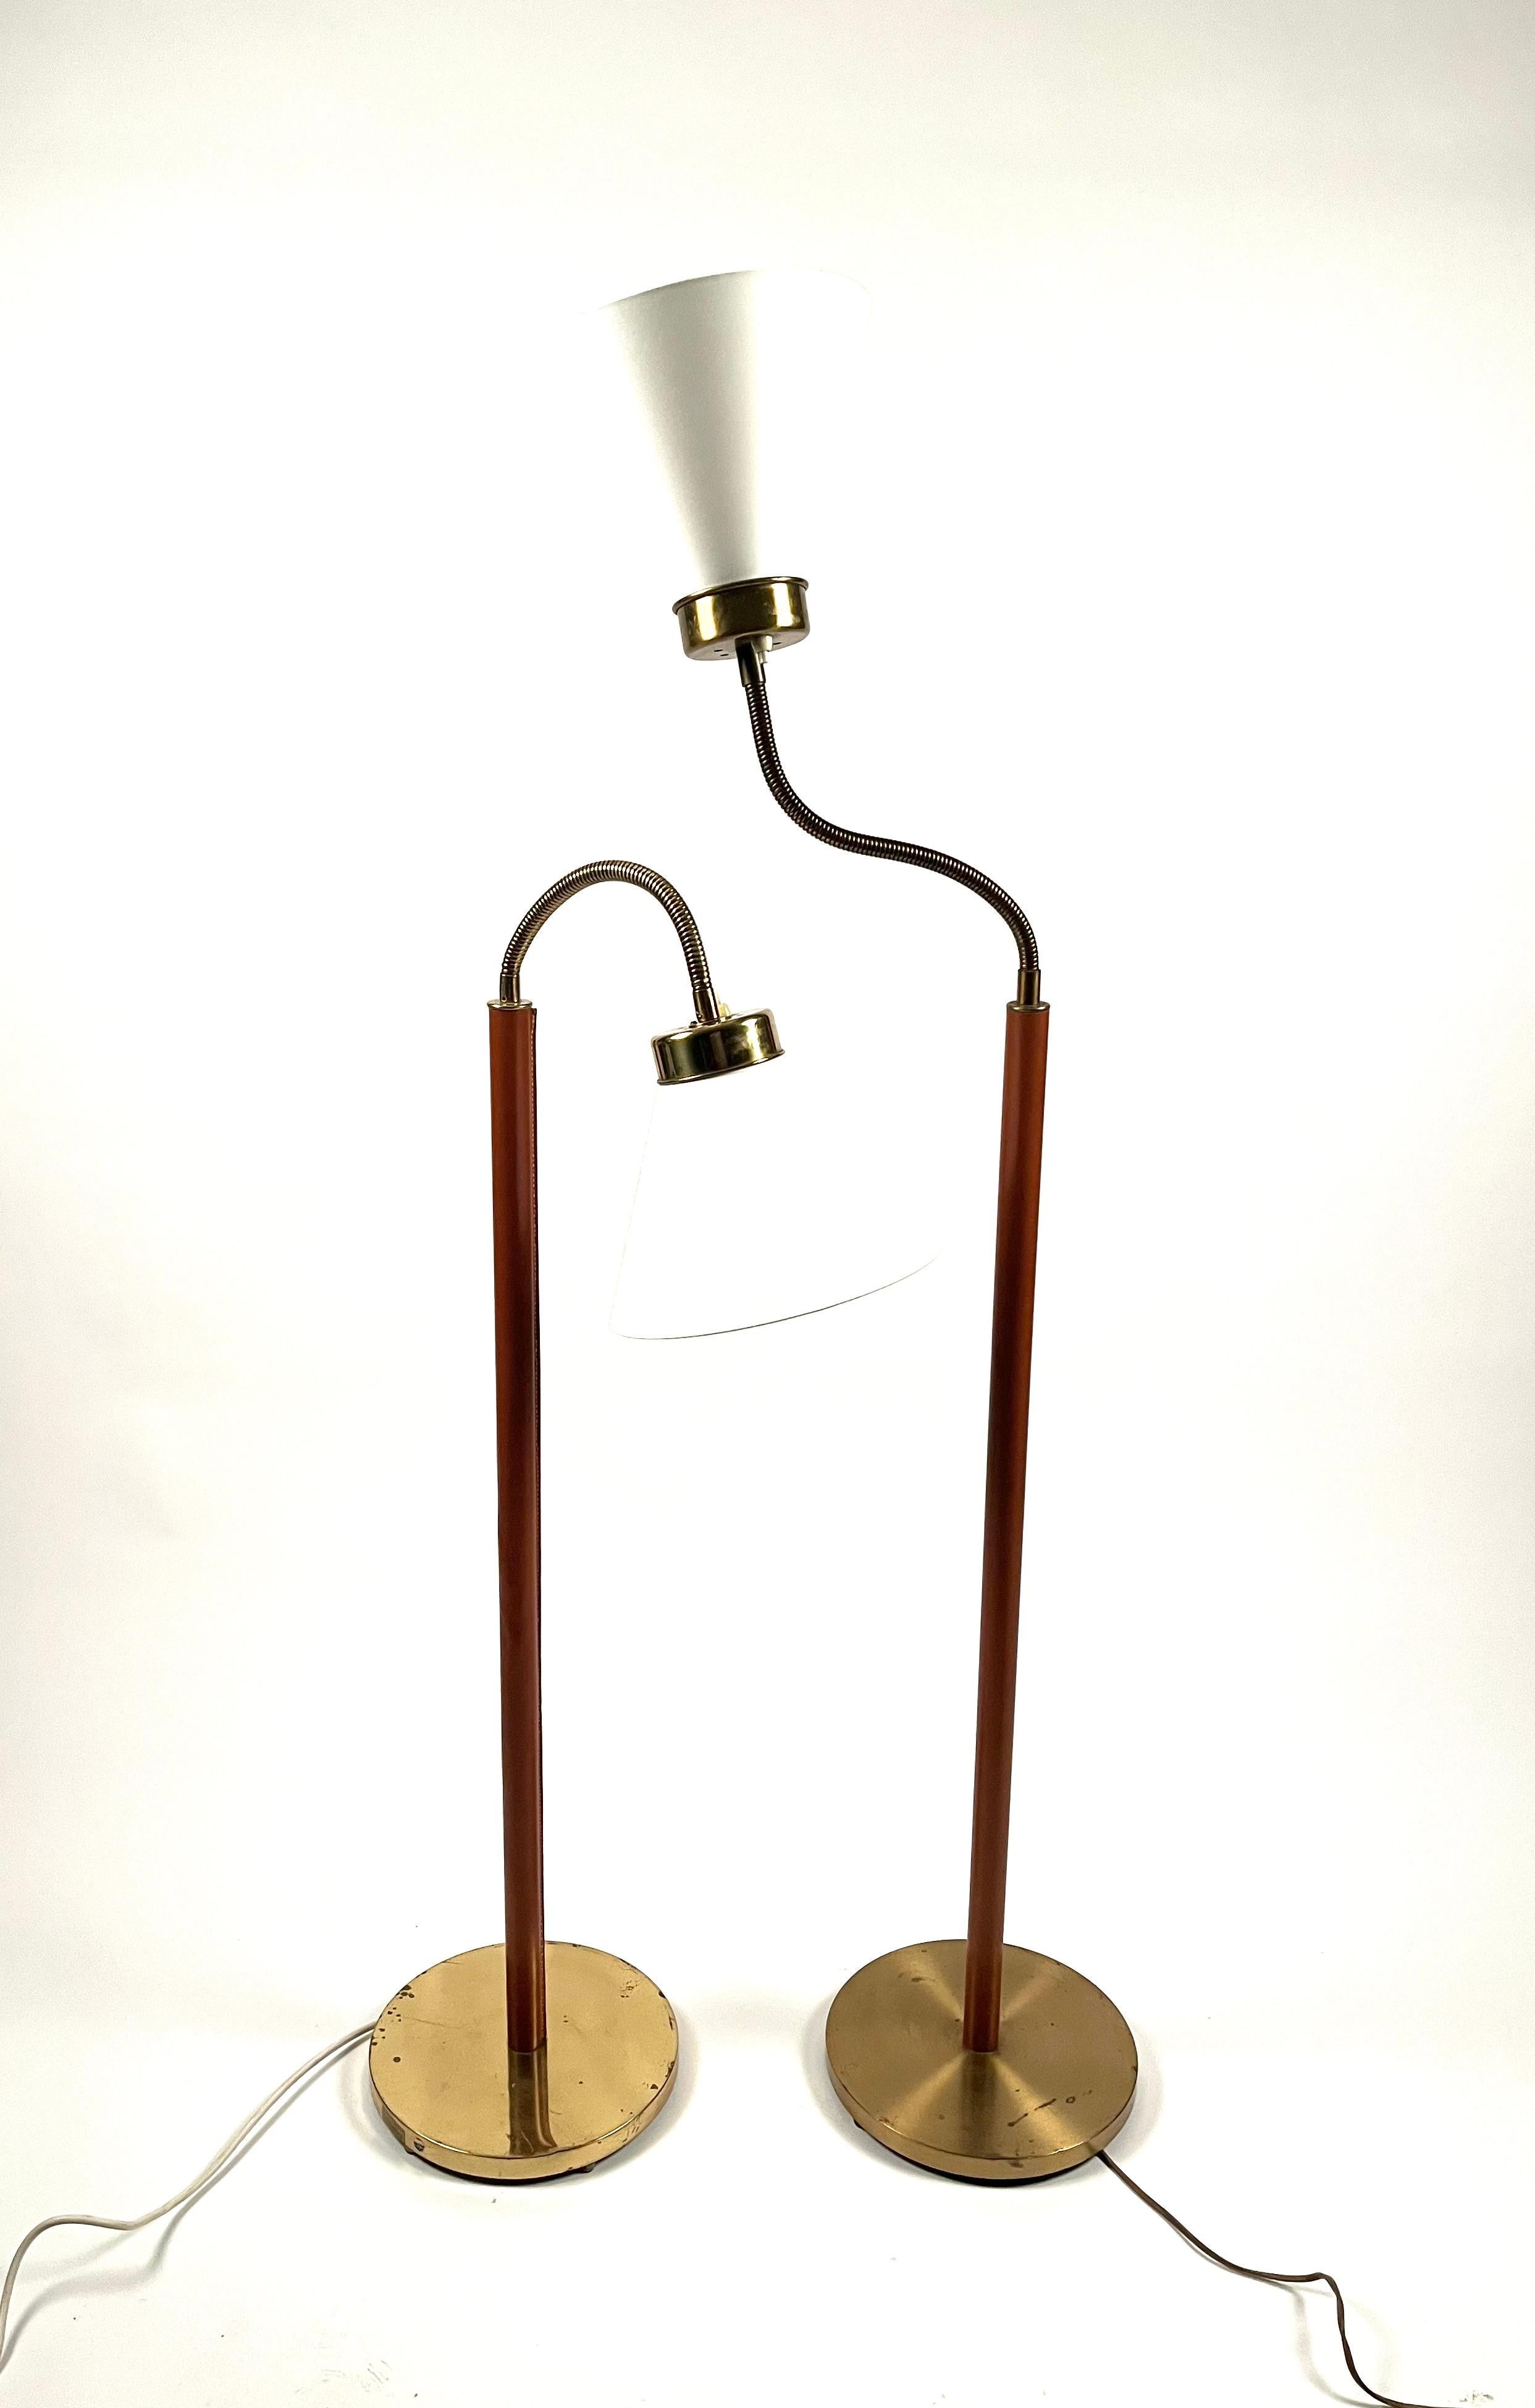 Zwei Stehlampen 1838, entworfen von Josef Frank  1934 für das schwedische Traditionsunternehmen Firma Svenskt Tenn in Stockholm.
Rahmen aus Messing mit cognacfarbenem Leder.
Unterschiedliche Höhen der Lampen. Die eine ist 5 cm länger als die